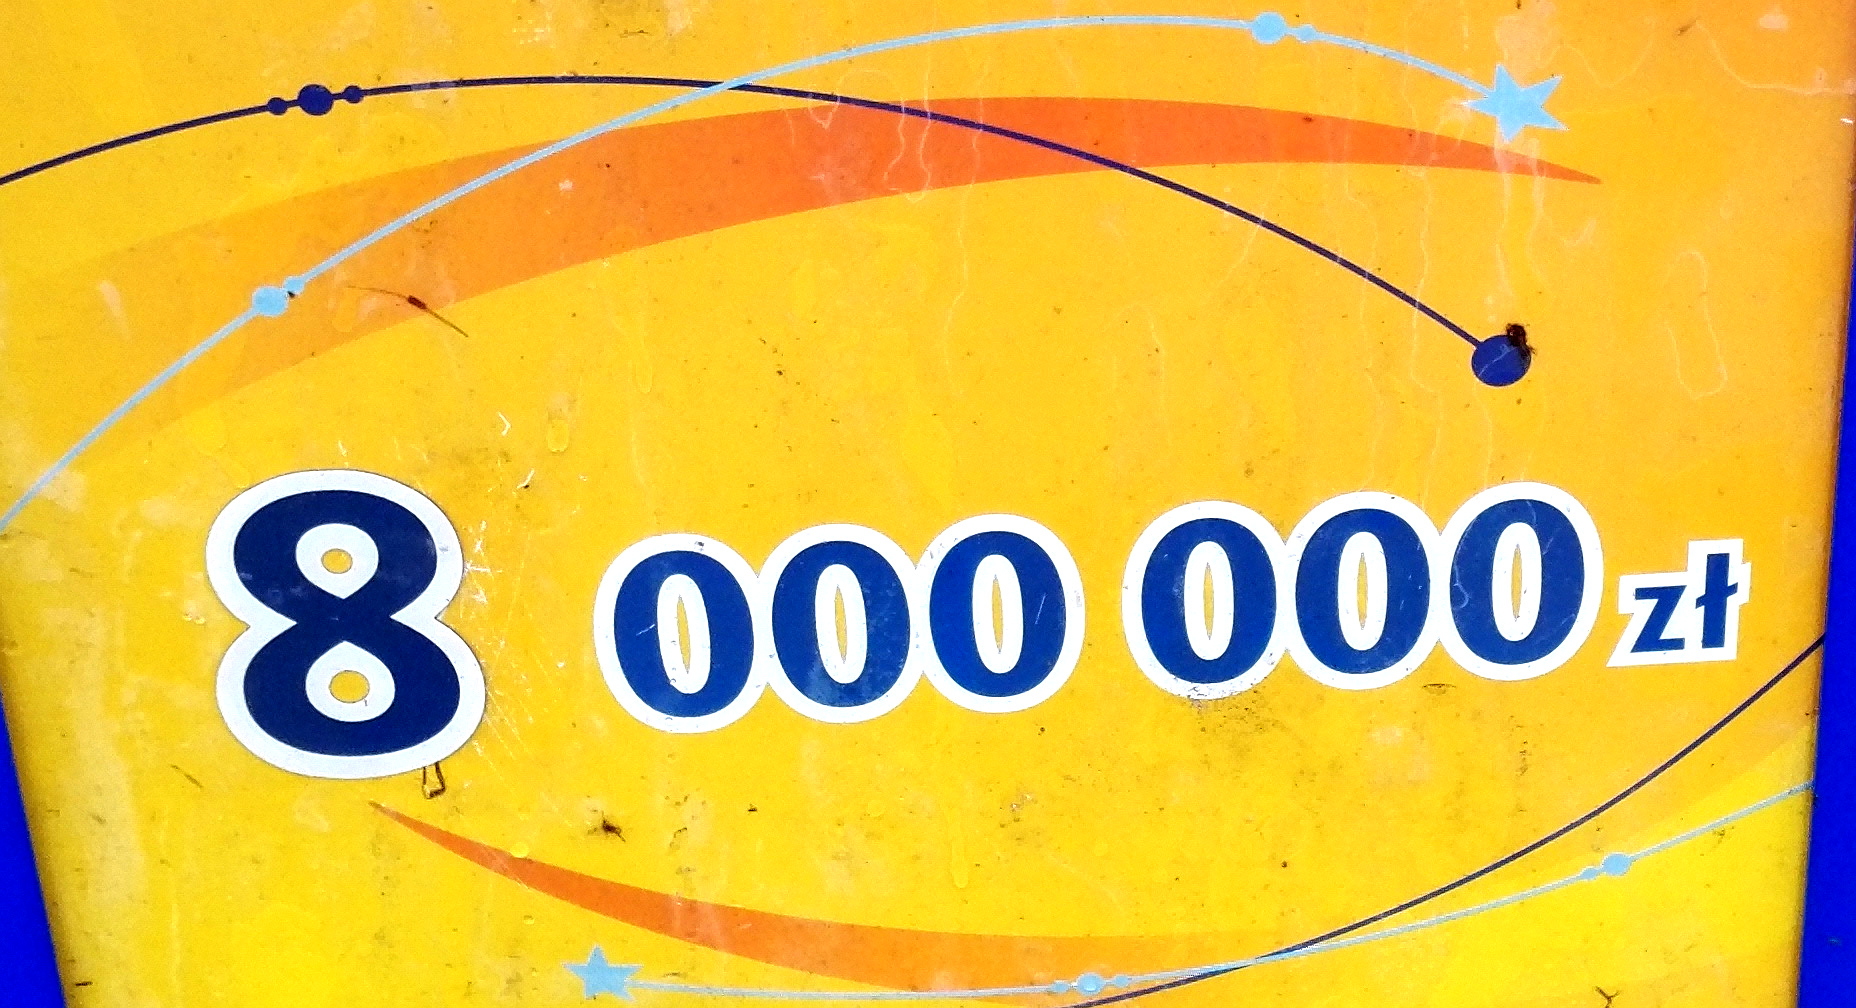 19 tafsir Lotto kod promocyjny sprawdz dan result langsung   dari 2013-2021 